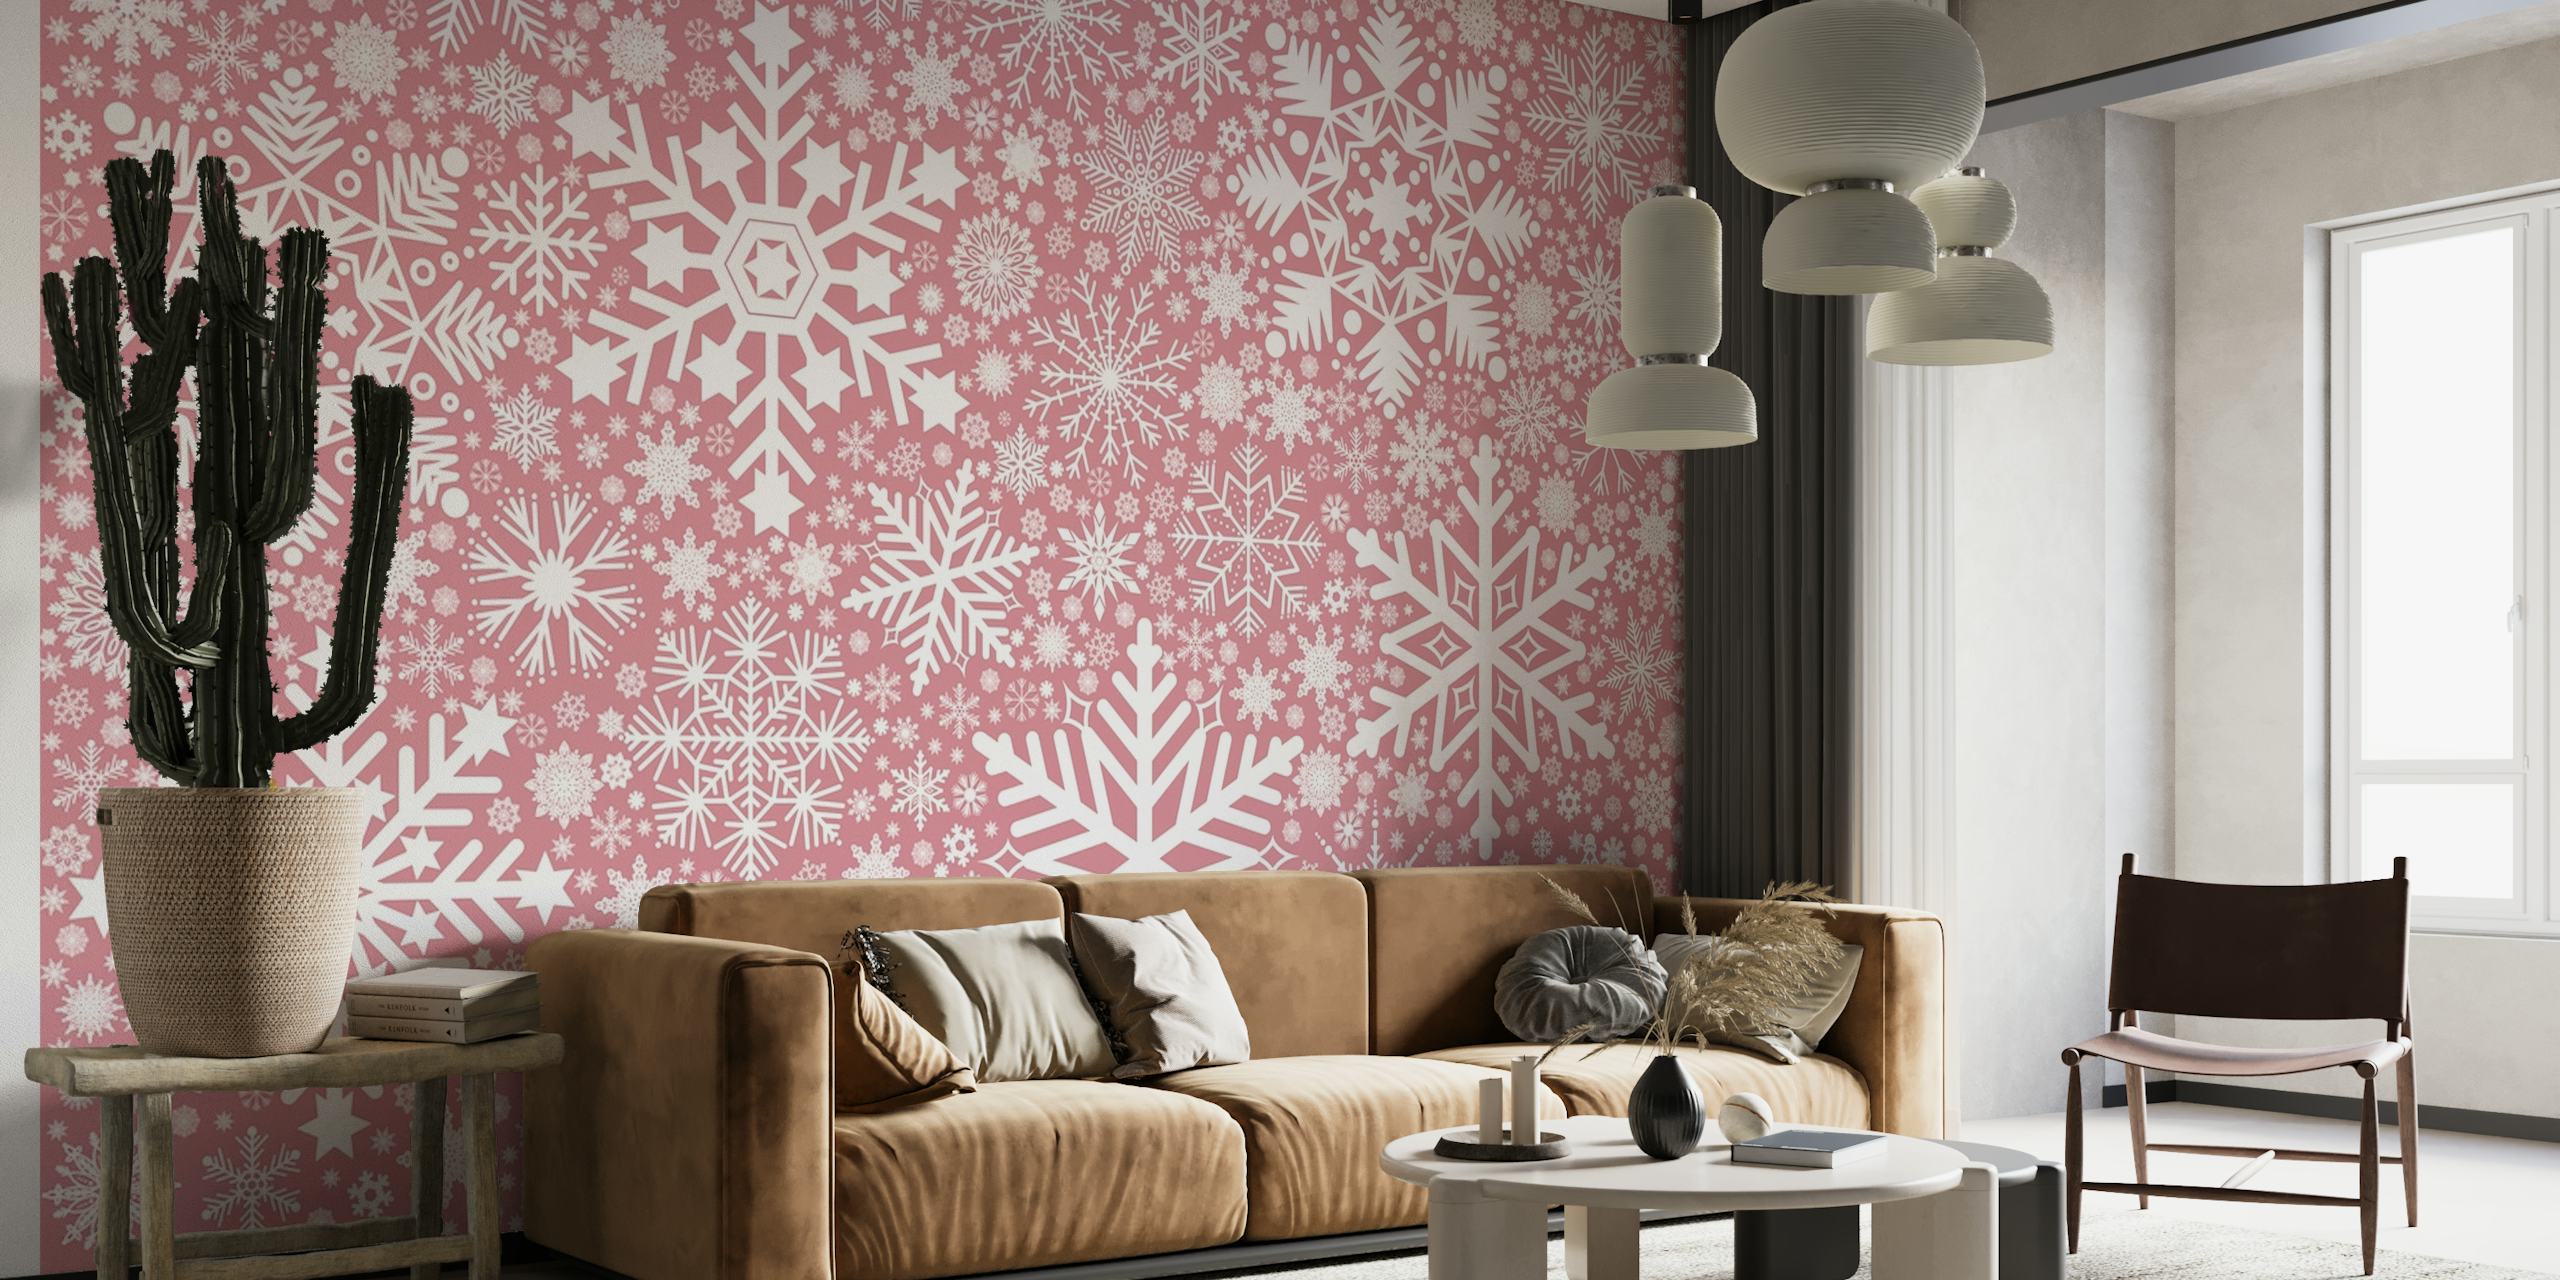 Fotomural vinílico de parede elegante com padrão de floco de neve rosa para decoração de interiores aconchegante